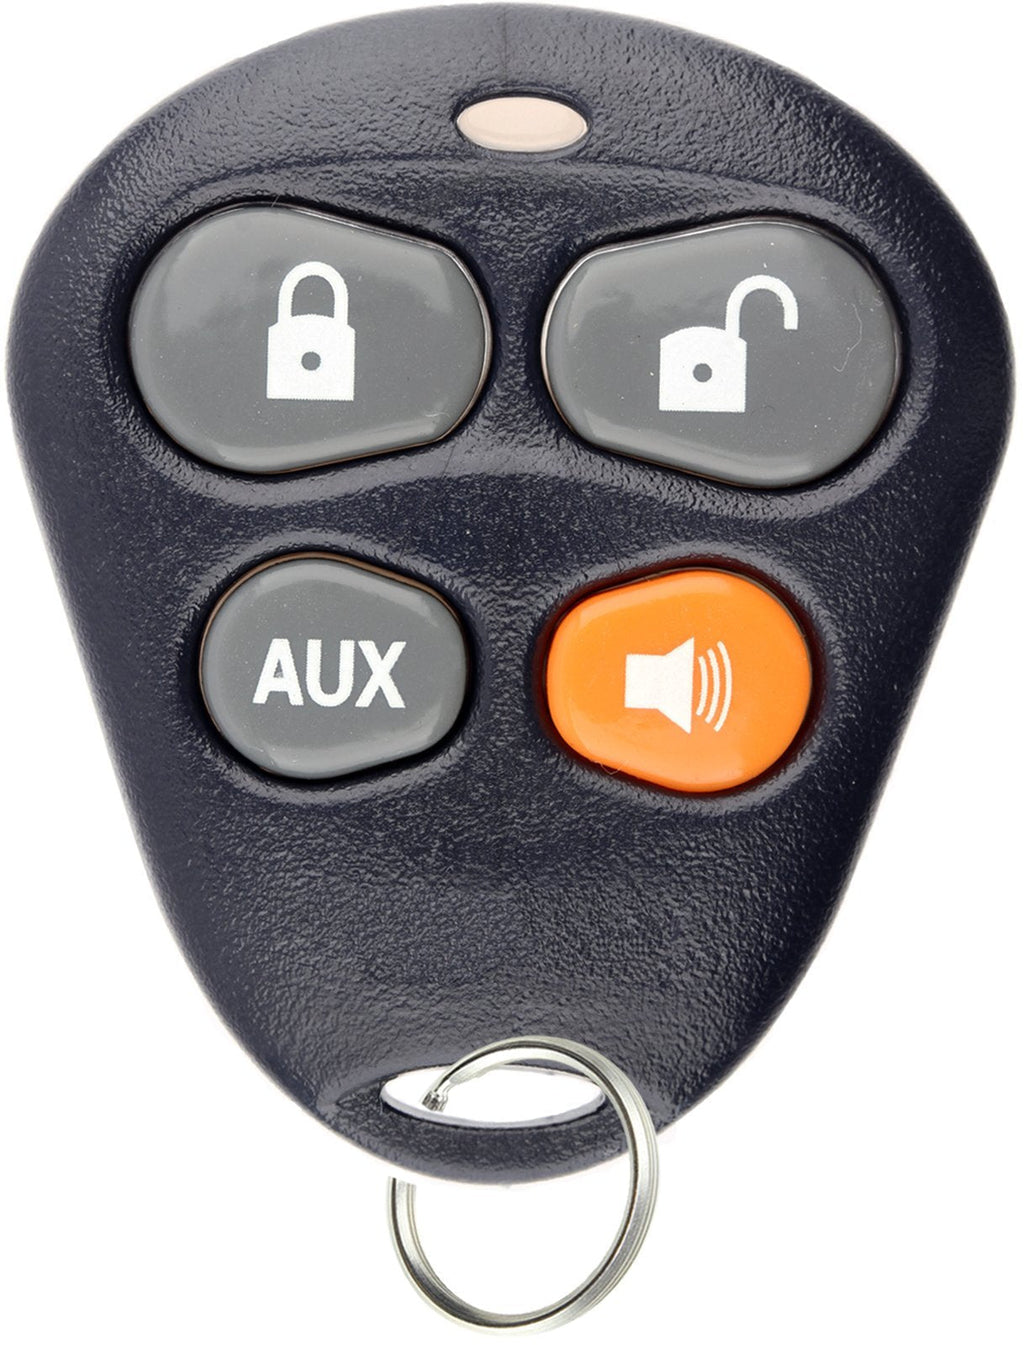  [AUSTRALIA] - KeylessOption Keyless Entry Remote Starter Car Key Fob Alarm For Aftermarket Viper Automate EZSDEI474V 474V Orange Button